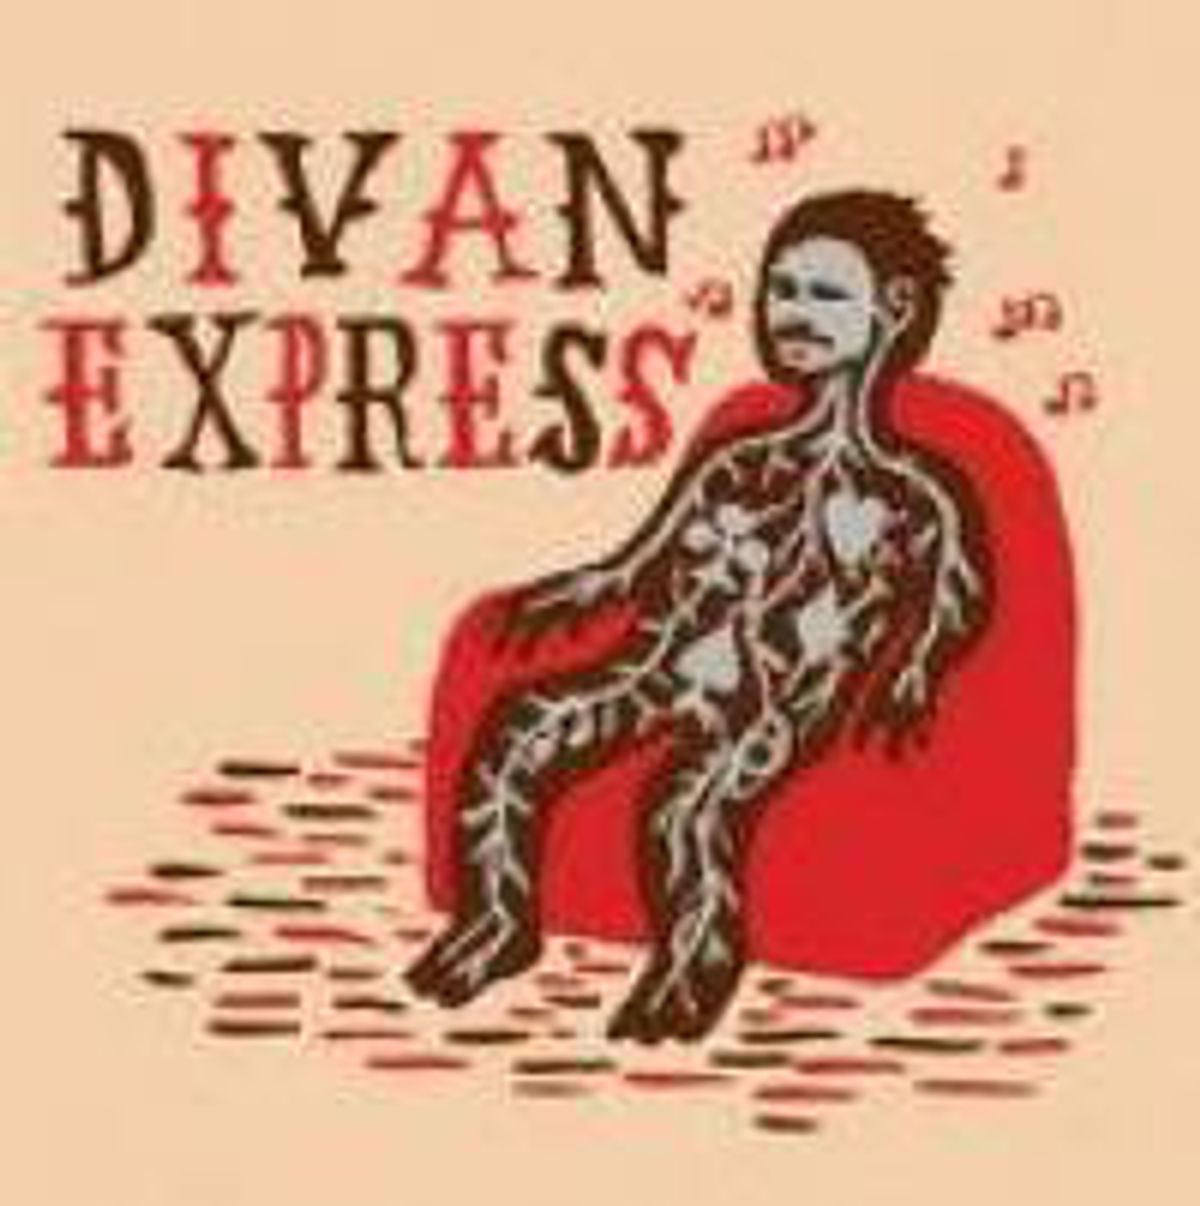 Divan Express